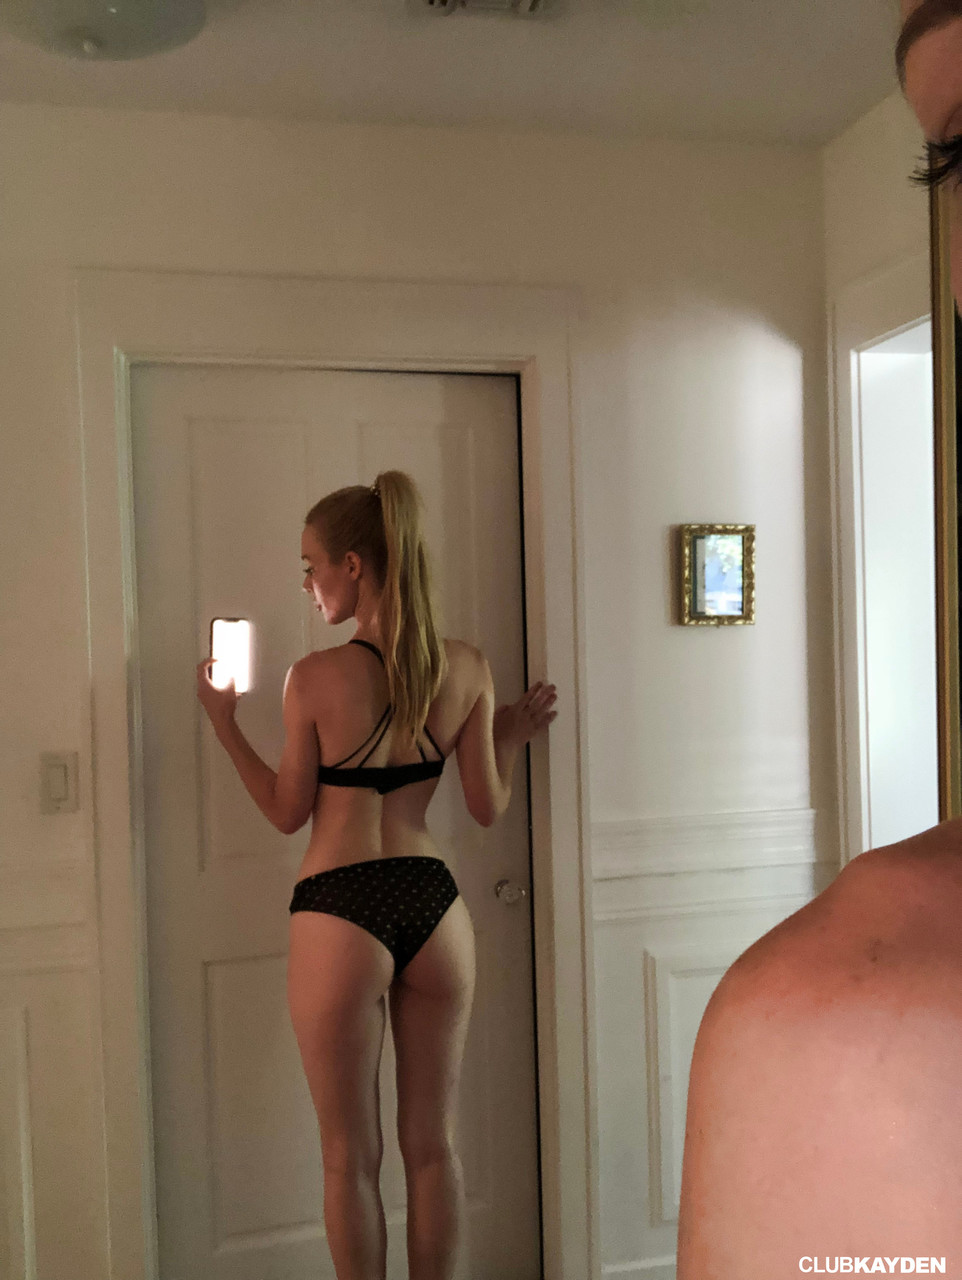 Blonde American babe with big tits Kayden Kross reveals her tasty twat порно фото #427254510 | Club Kayden Pics, Kayden Kross, Selfie, мобильное порно